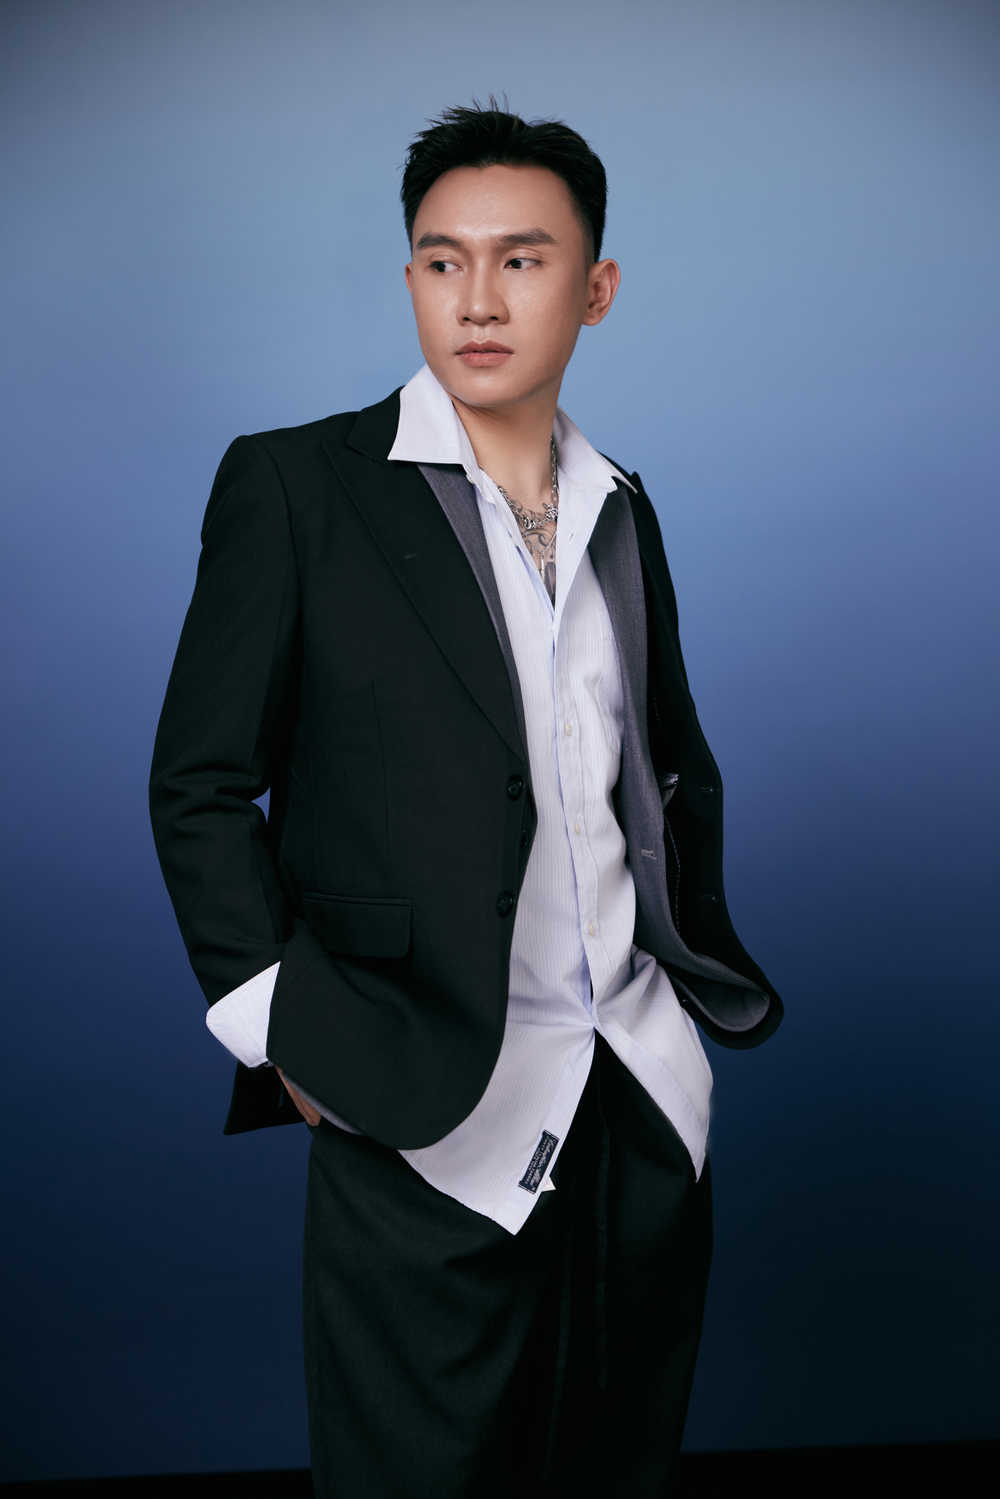 Ca - nhạc sĩ Trịnh Đình Quang trở lại với MV đầy ý nghĩa Trái tim giữa bầu trời - Ảnh 1.